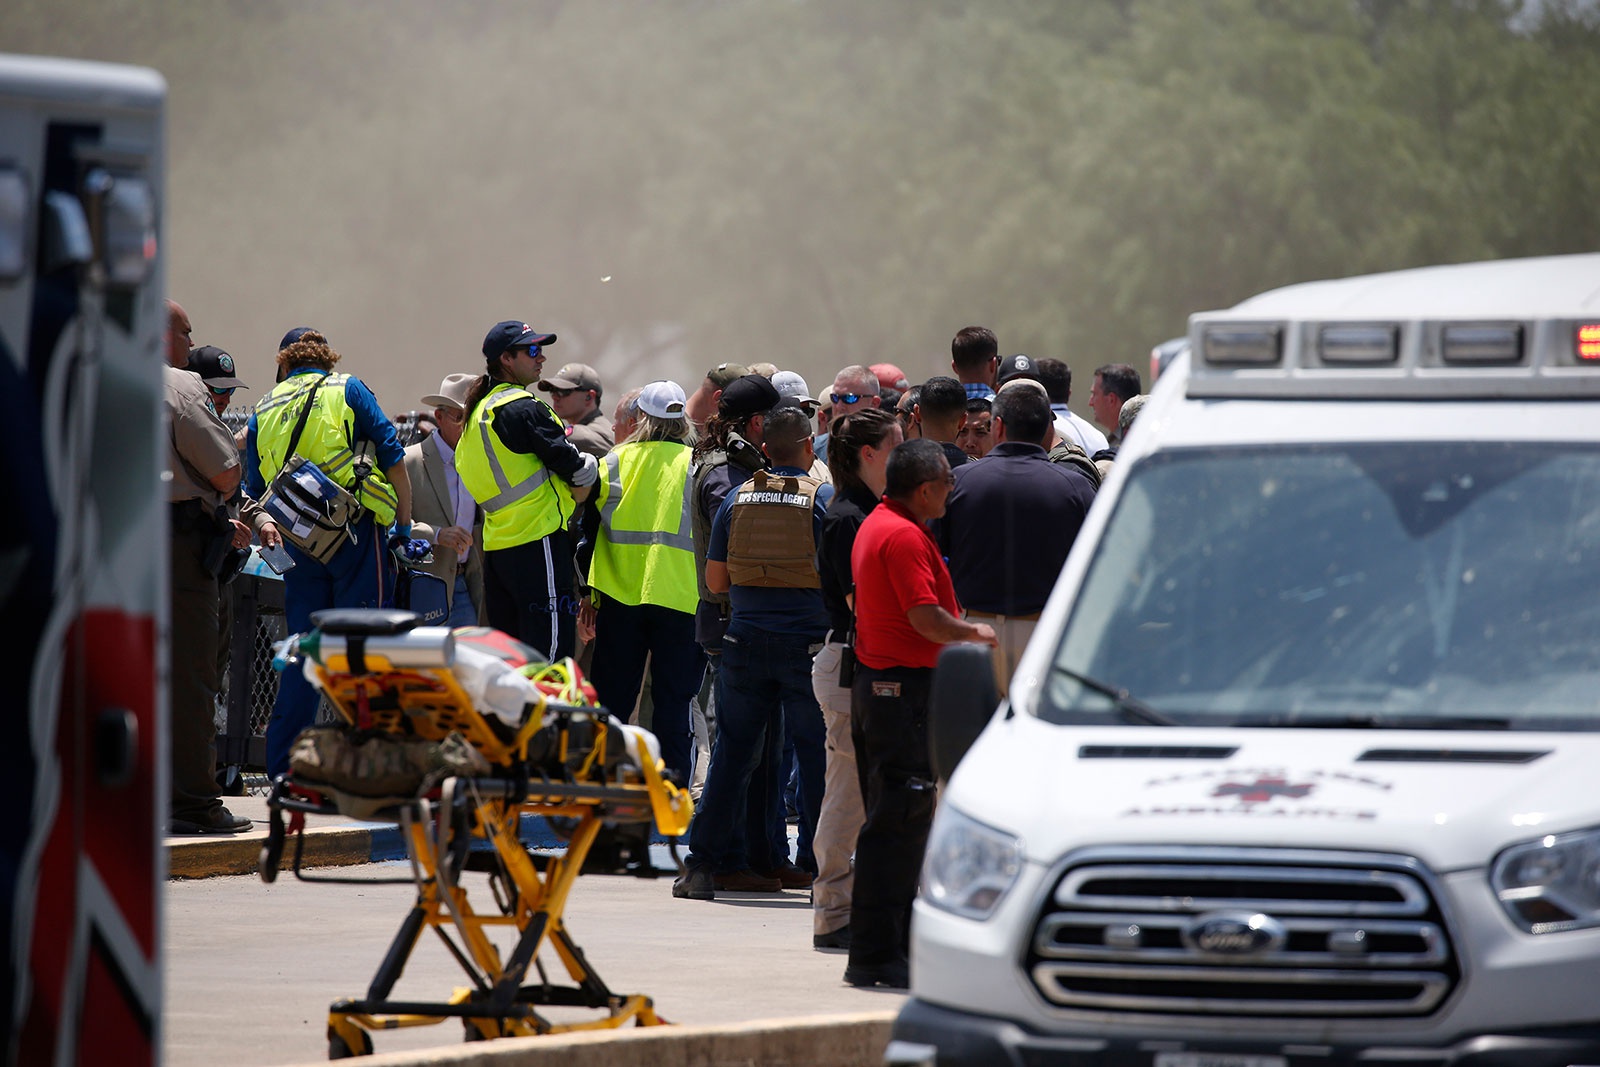 Xả súng chấn động tại trường học ở Texas khiến 21 người thiệt mạng - Ảnh 1.